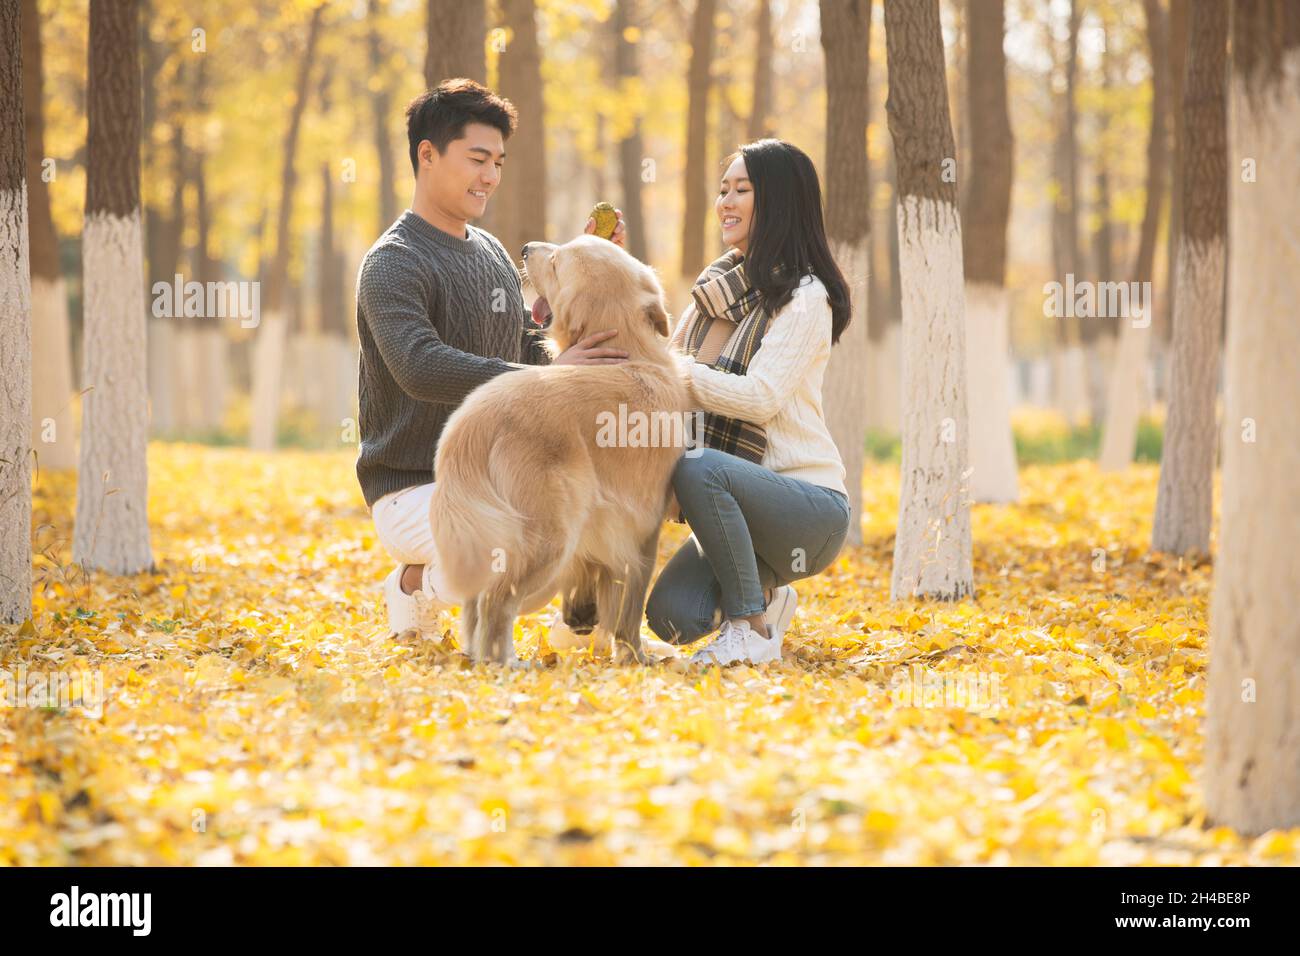 Les jeunes amoureux et leur chien de compagnie jouant dans les bois en automne Banque D'Images